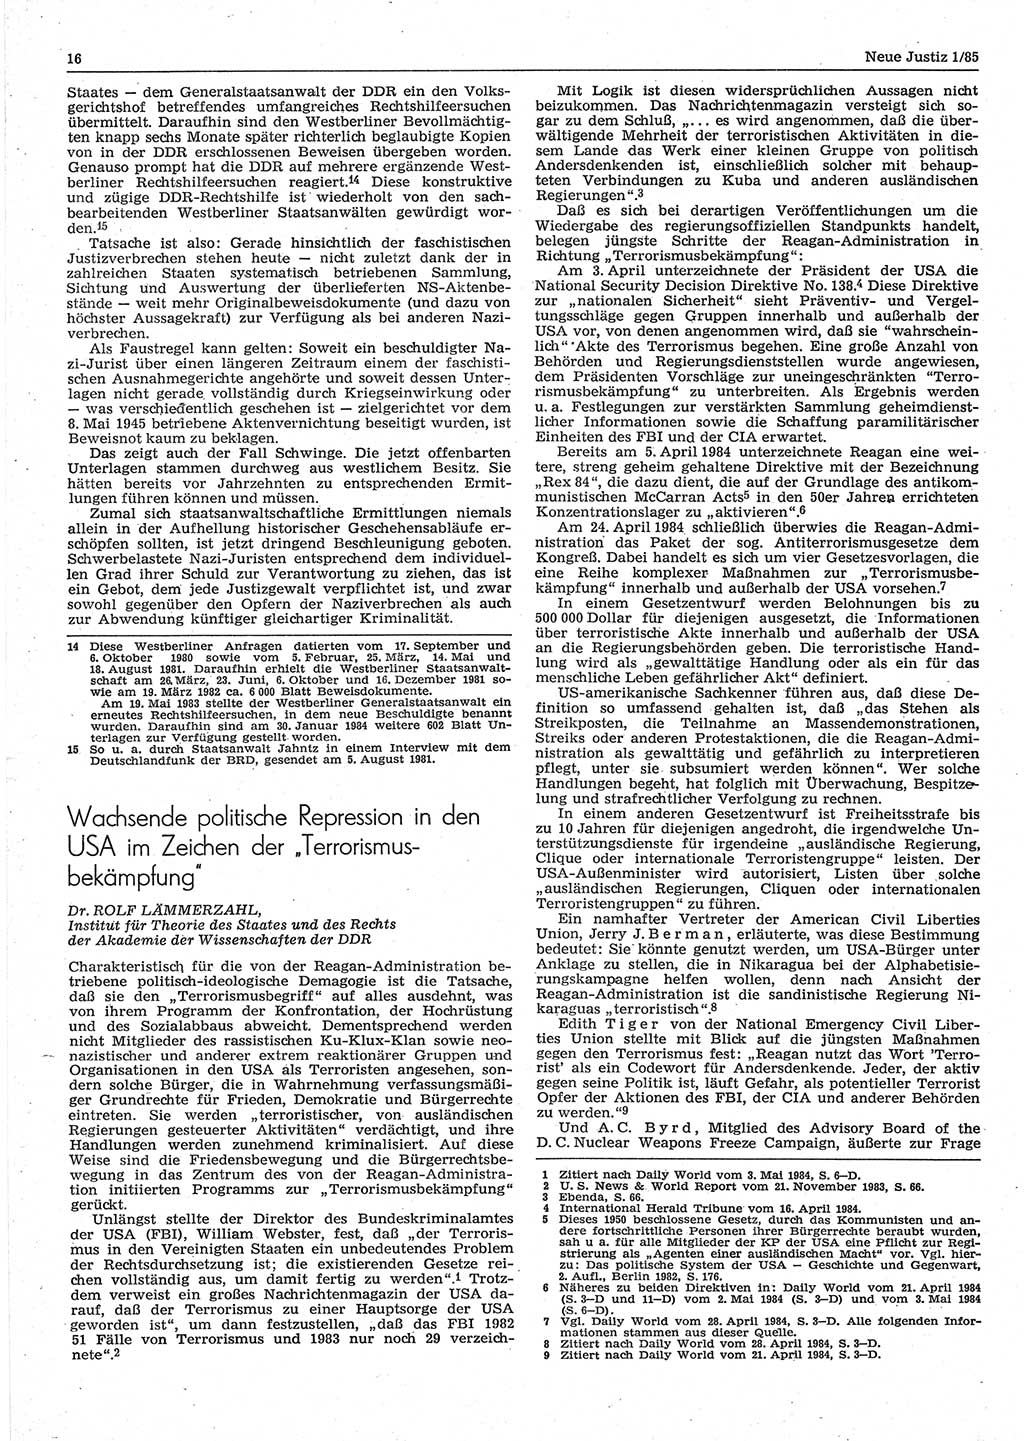 Neue Justiz (NJ), Zeitschrift für sozialistisches Recht und Gesetzlichkeit [Deutsche Demokratische Republik (DDR)], 39. Jahrgang 1985, Seite 16 (NJ DDR 1985, S. 16)